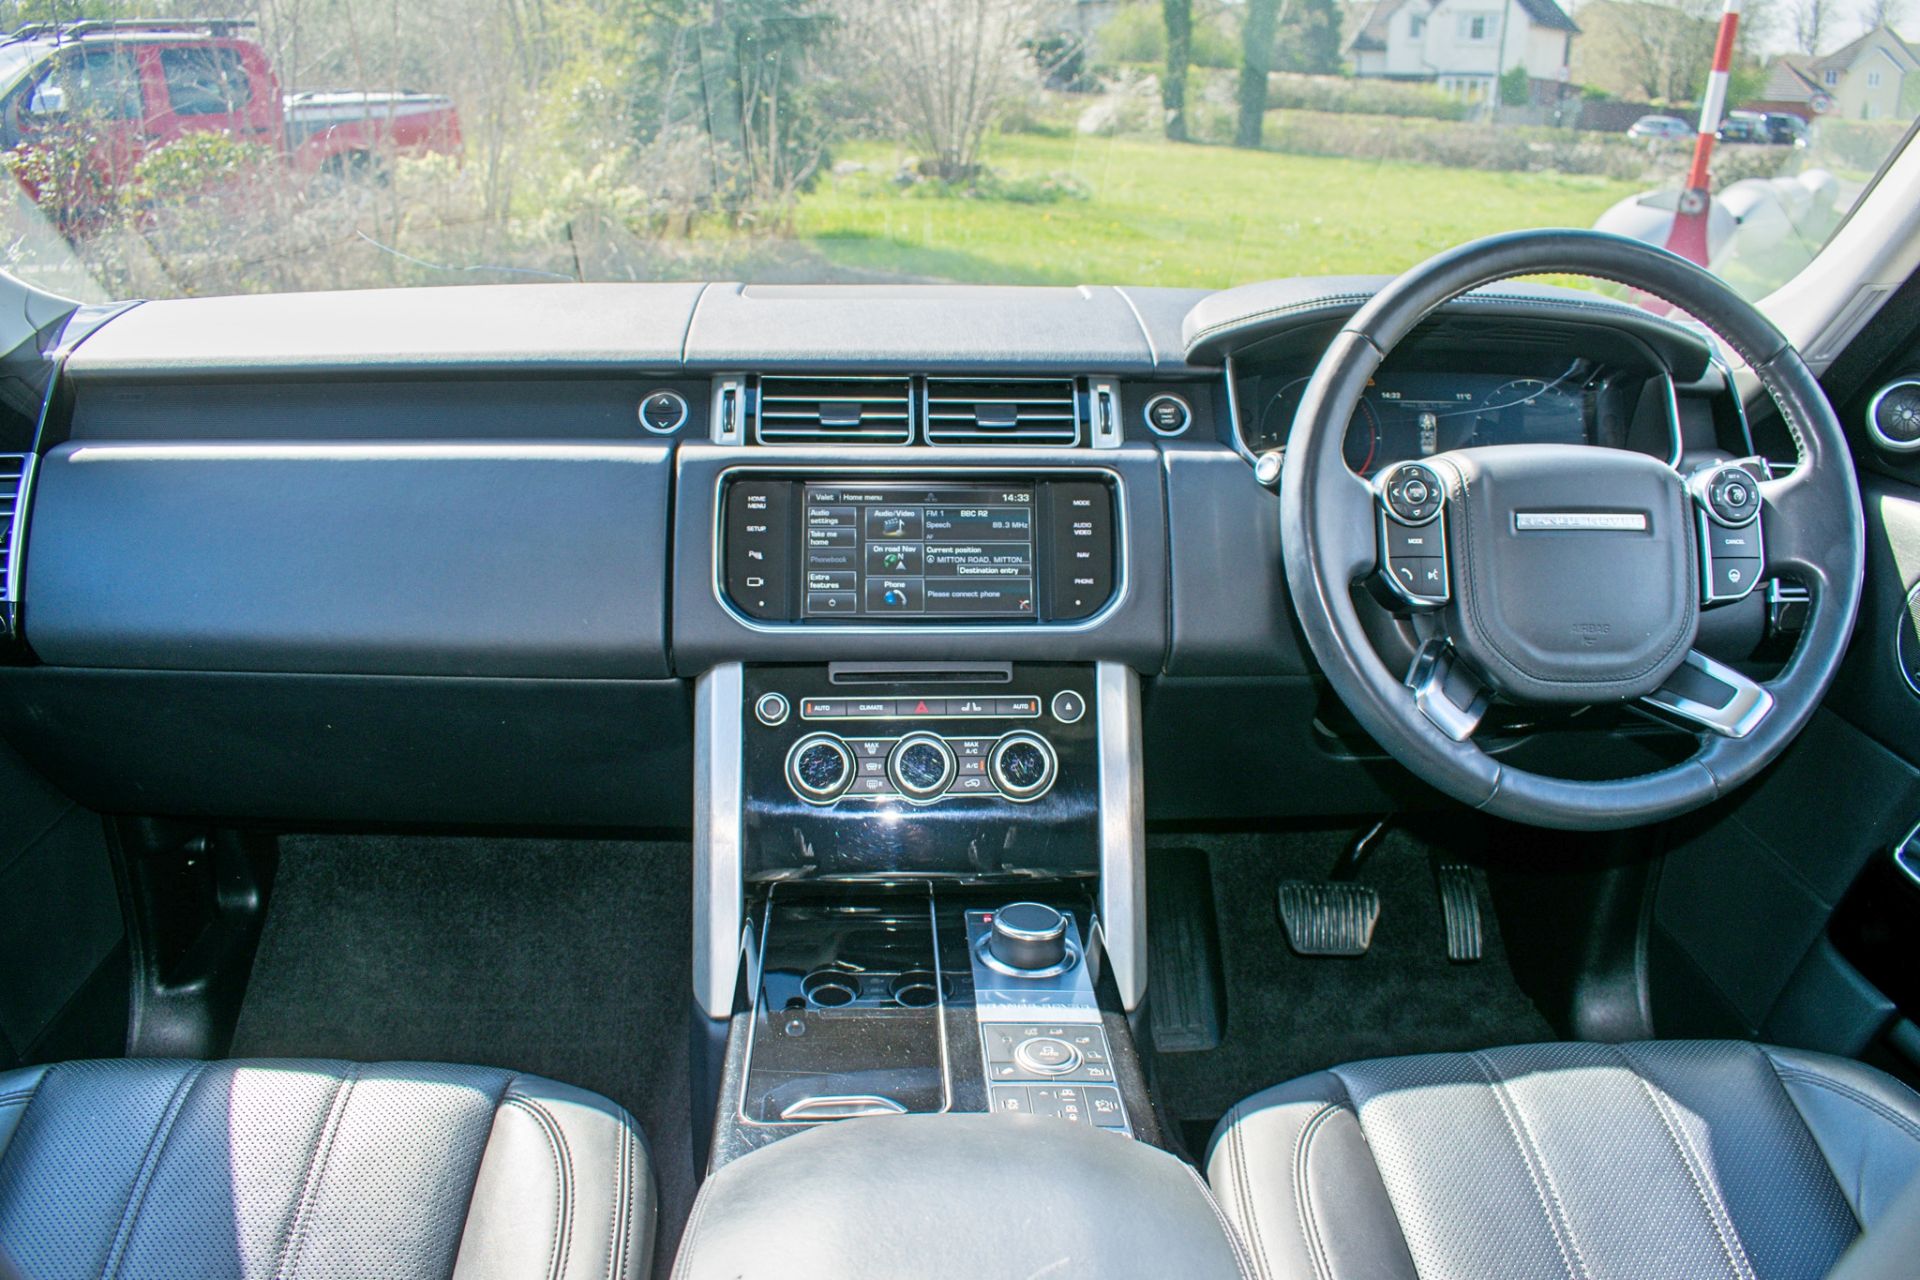 Range Rover Vogue SDV8 Auto 5 door estate SUV Registration Number: AU14 YLN Date of Registration: - Image 10 of 12